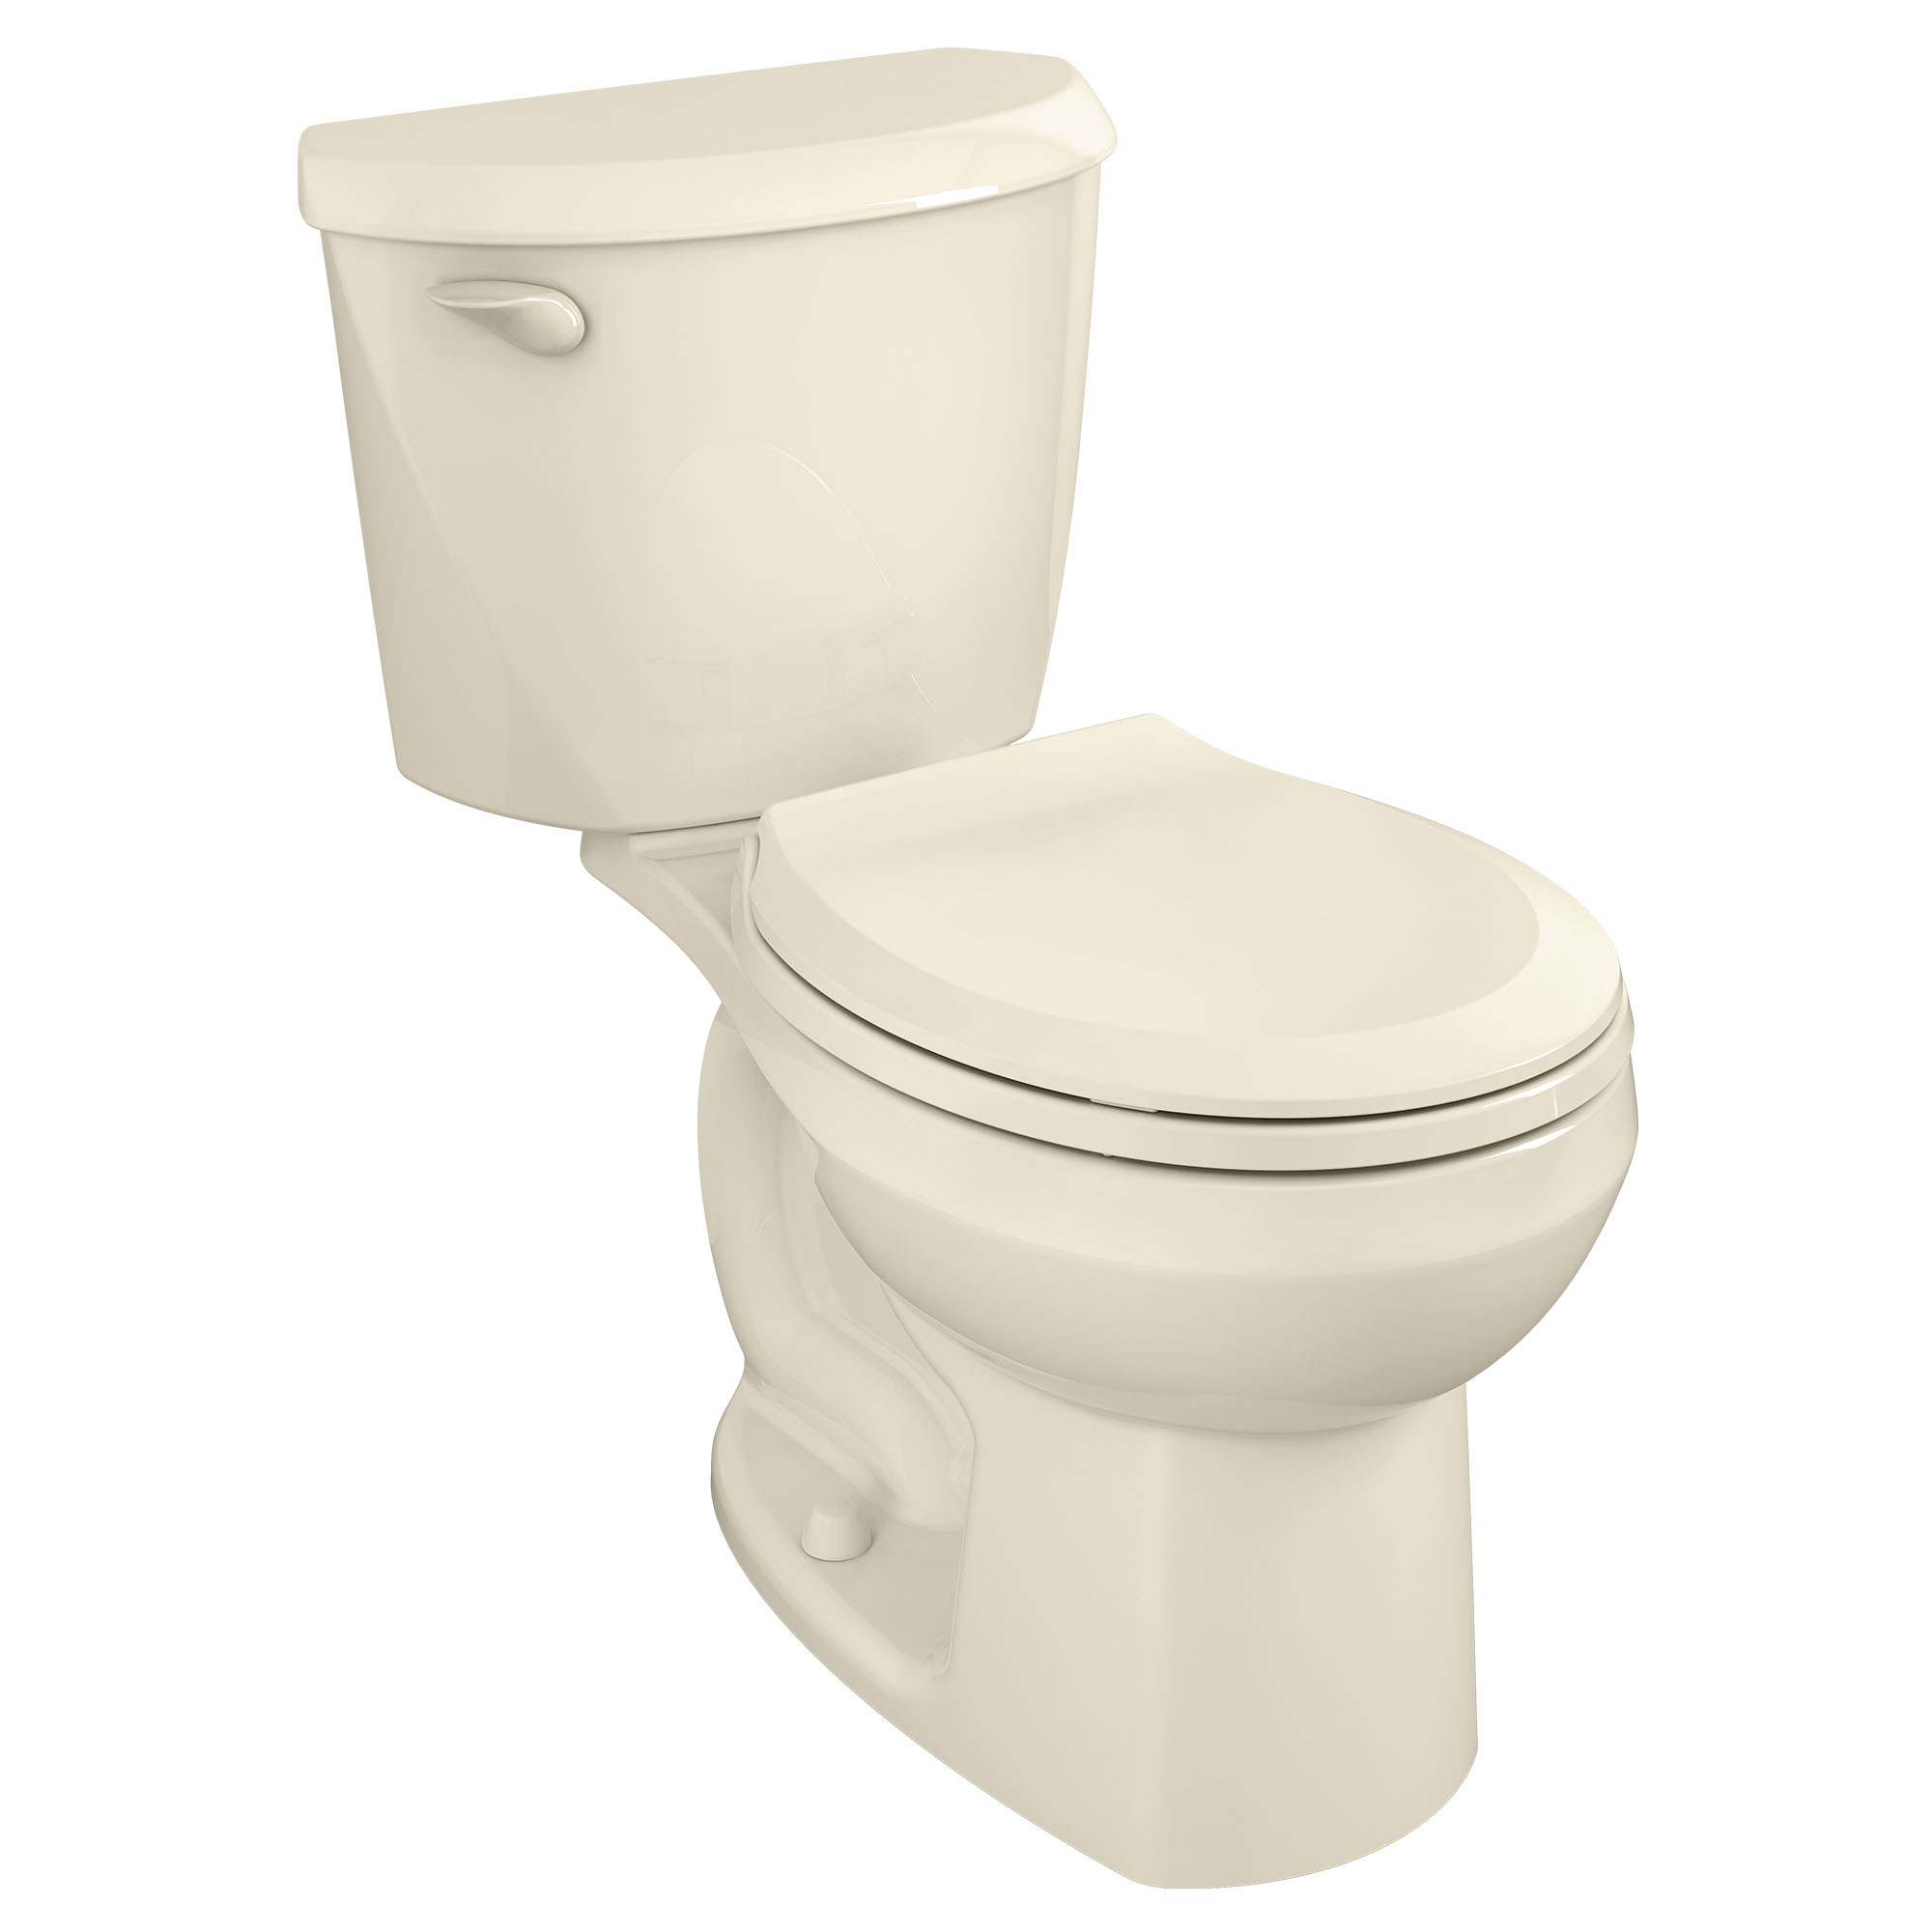 Toilette Colony, 2 pièces, 1,6 gpc/6,0 lpc, à cuvette au devant rond à hauteur régulière, sans siège